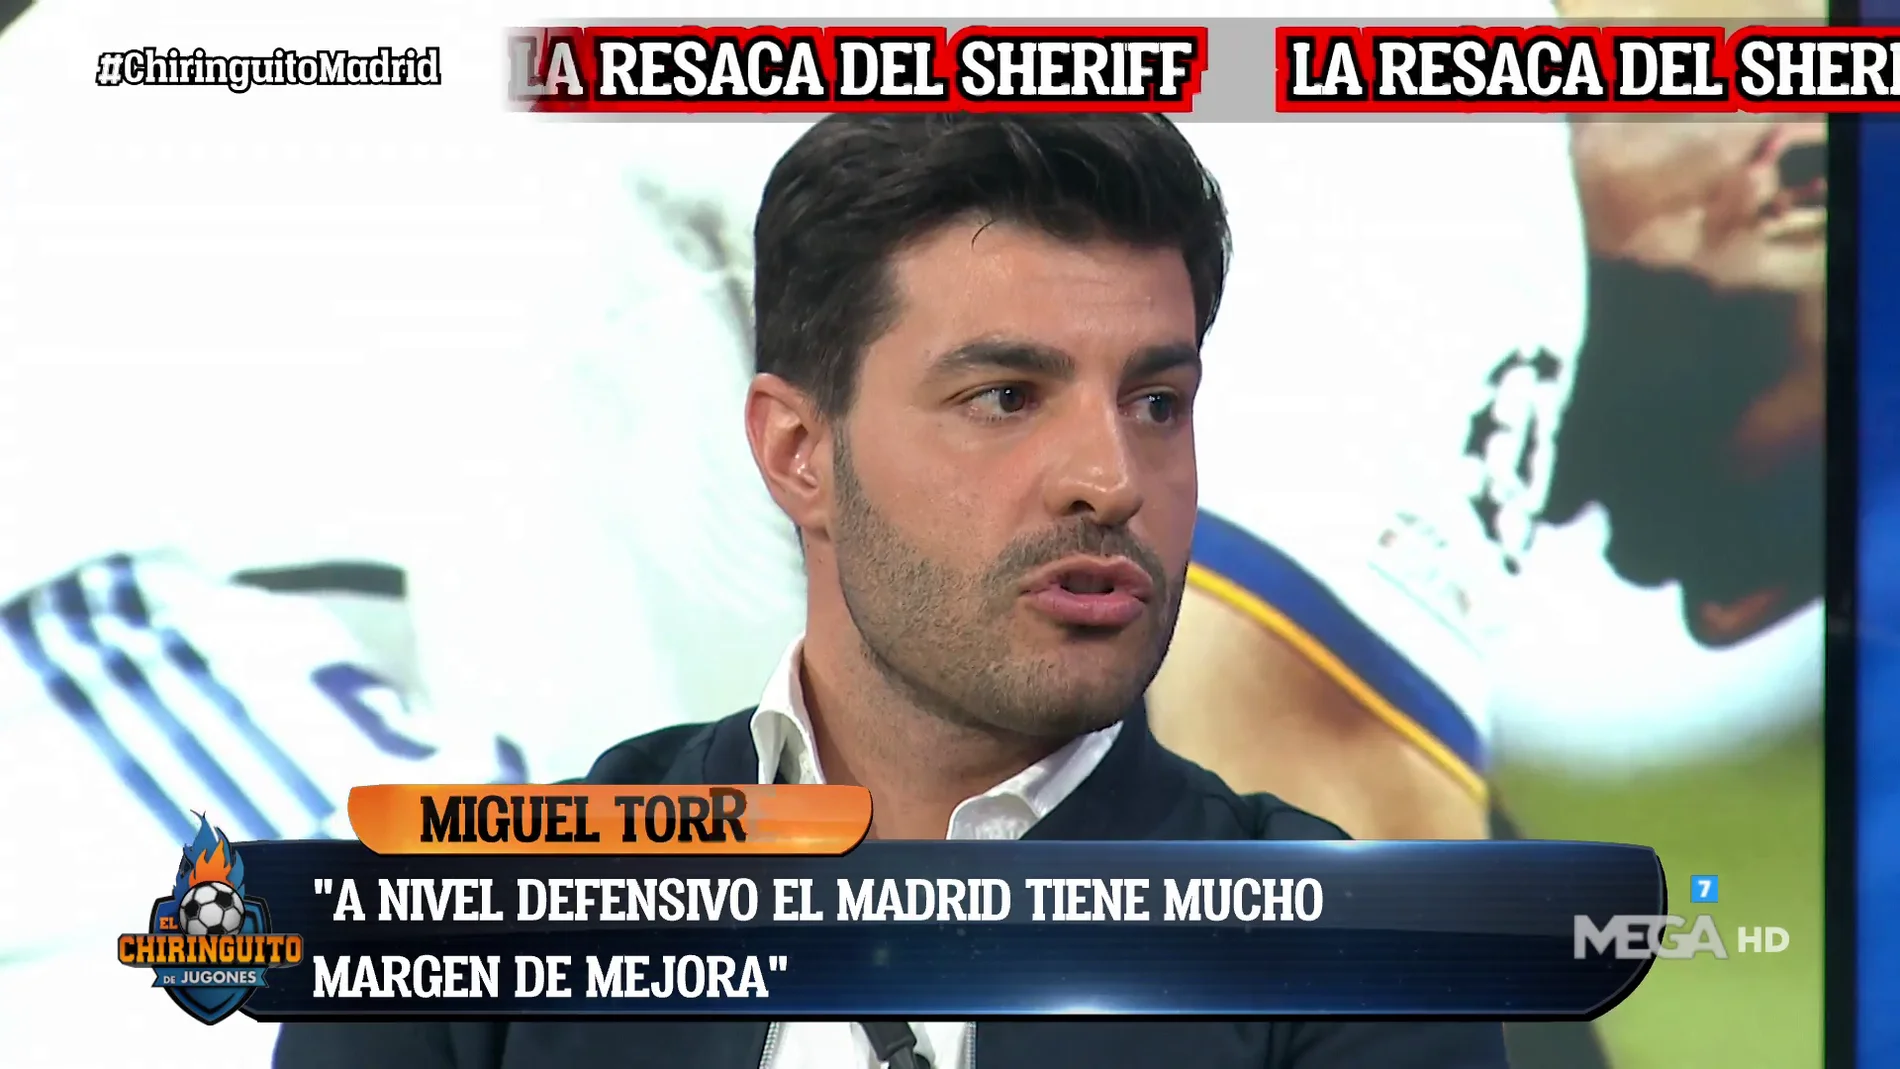 MIGUEL TORRES: "EL REAL MADRID DE 20 PARTIDOS COMO EL DEL SHERIFF GANA 19"